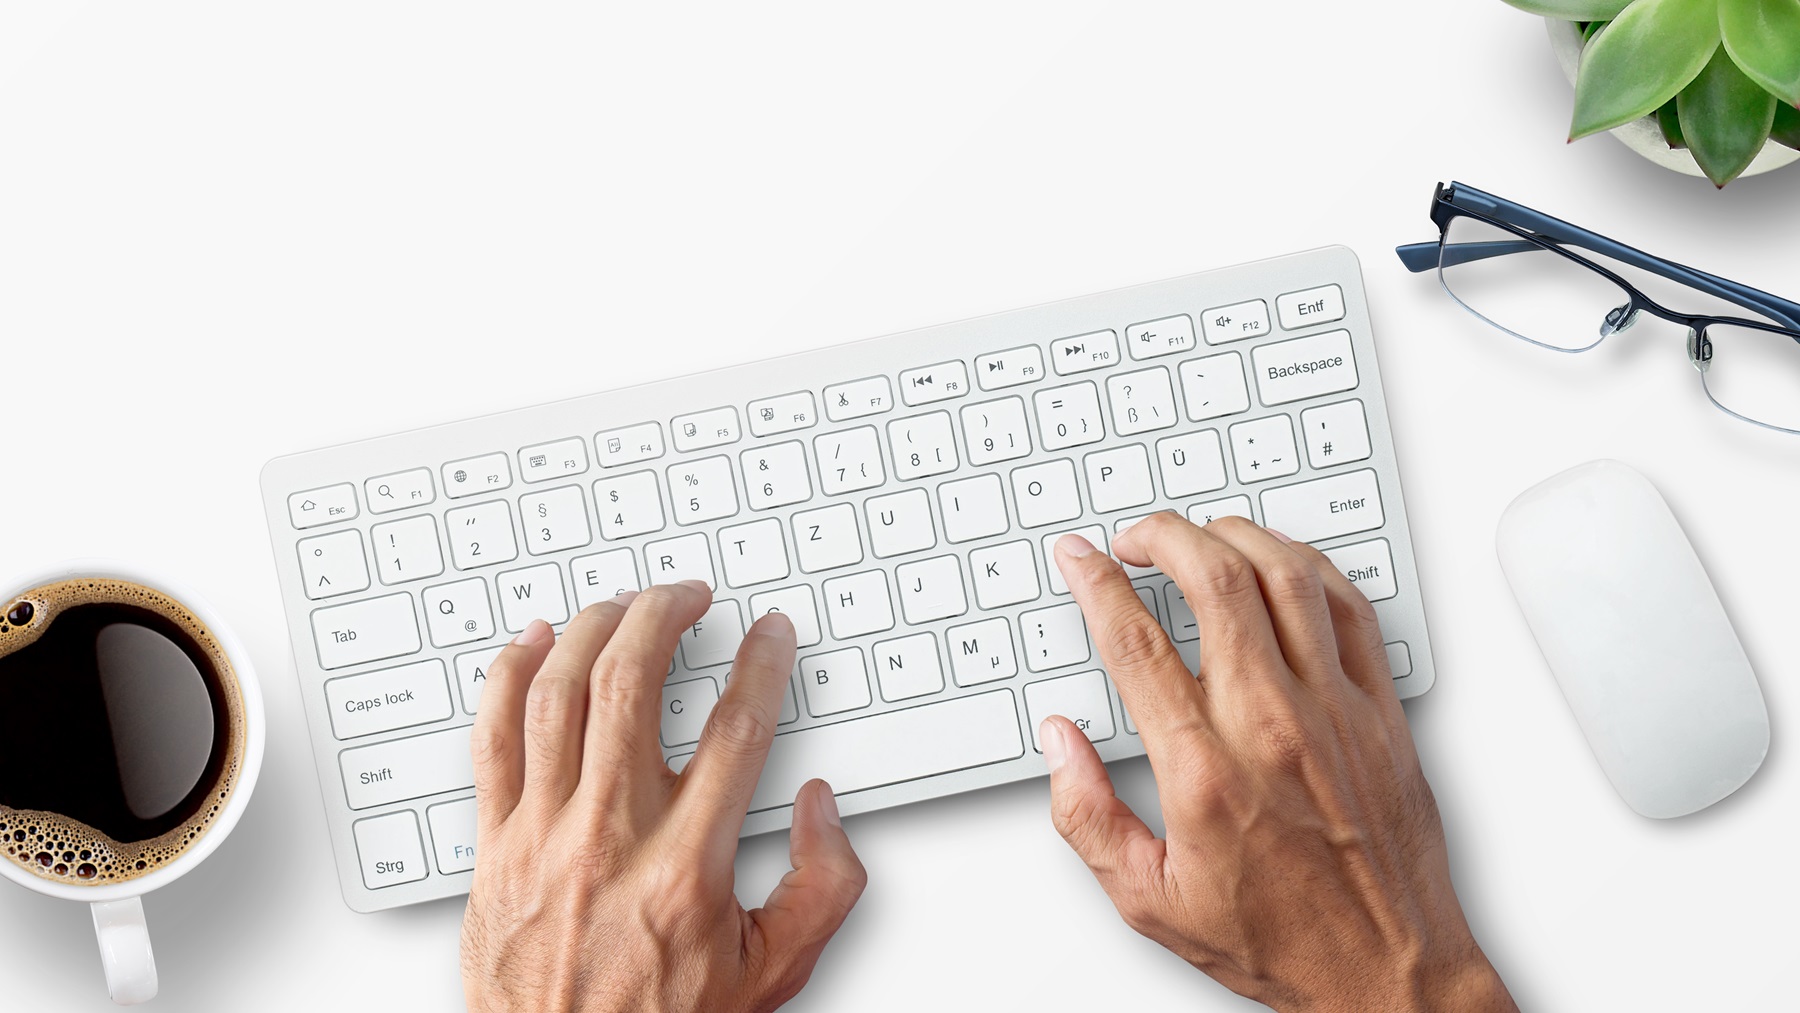 Logitech presenta un conjunto de ratón y teclado perfecto para trabajar